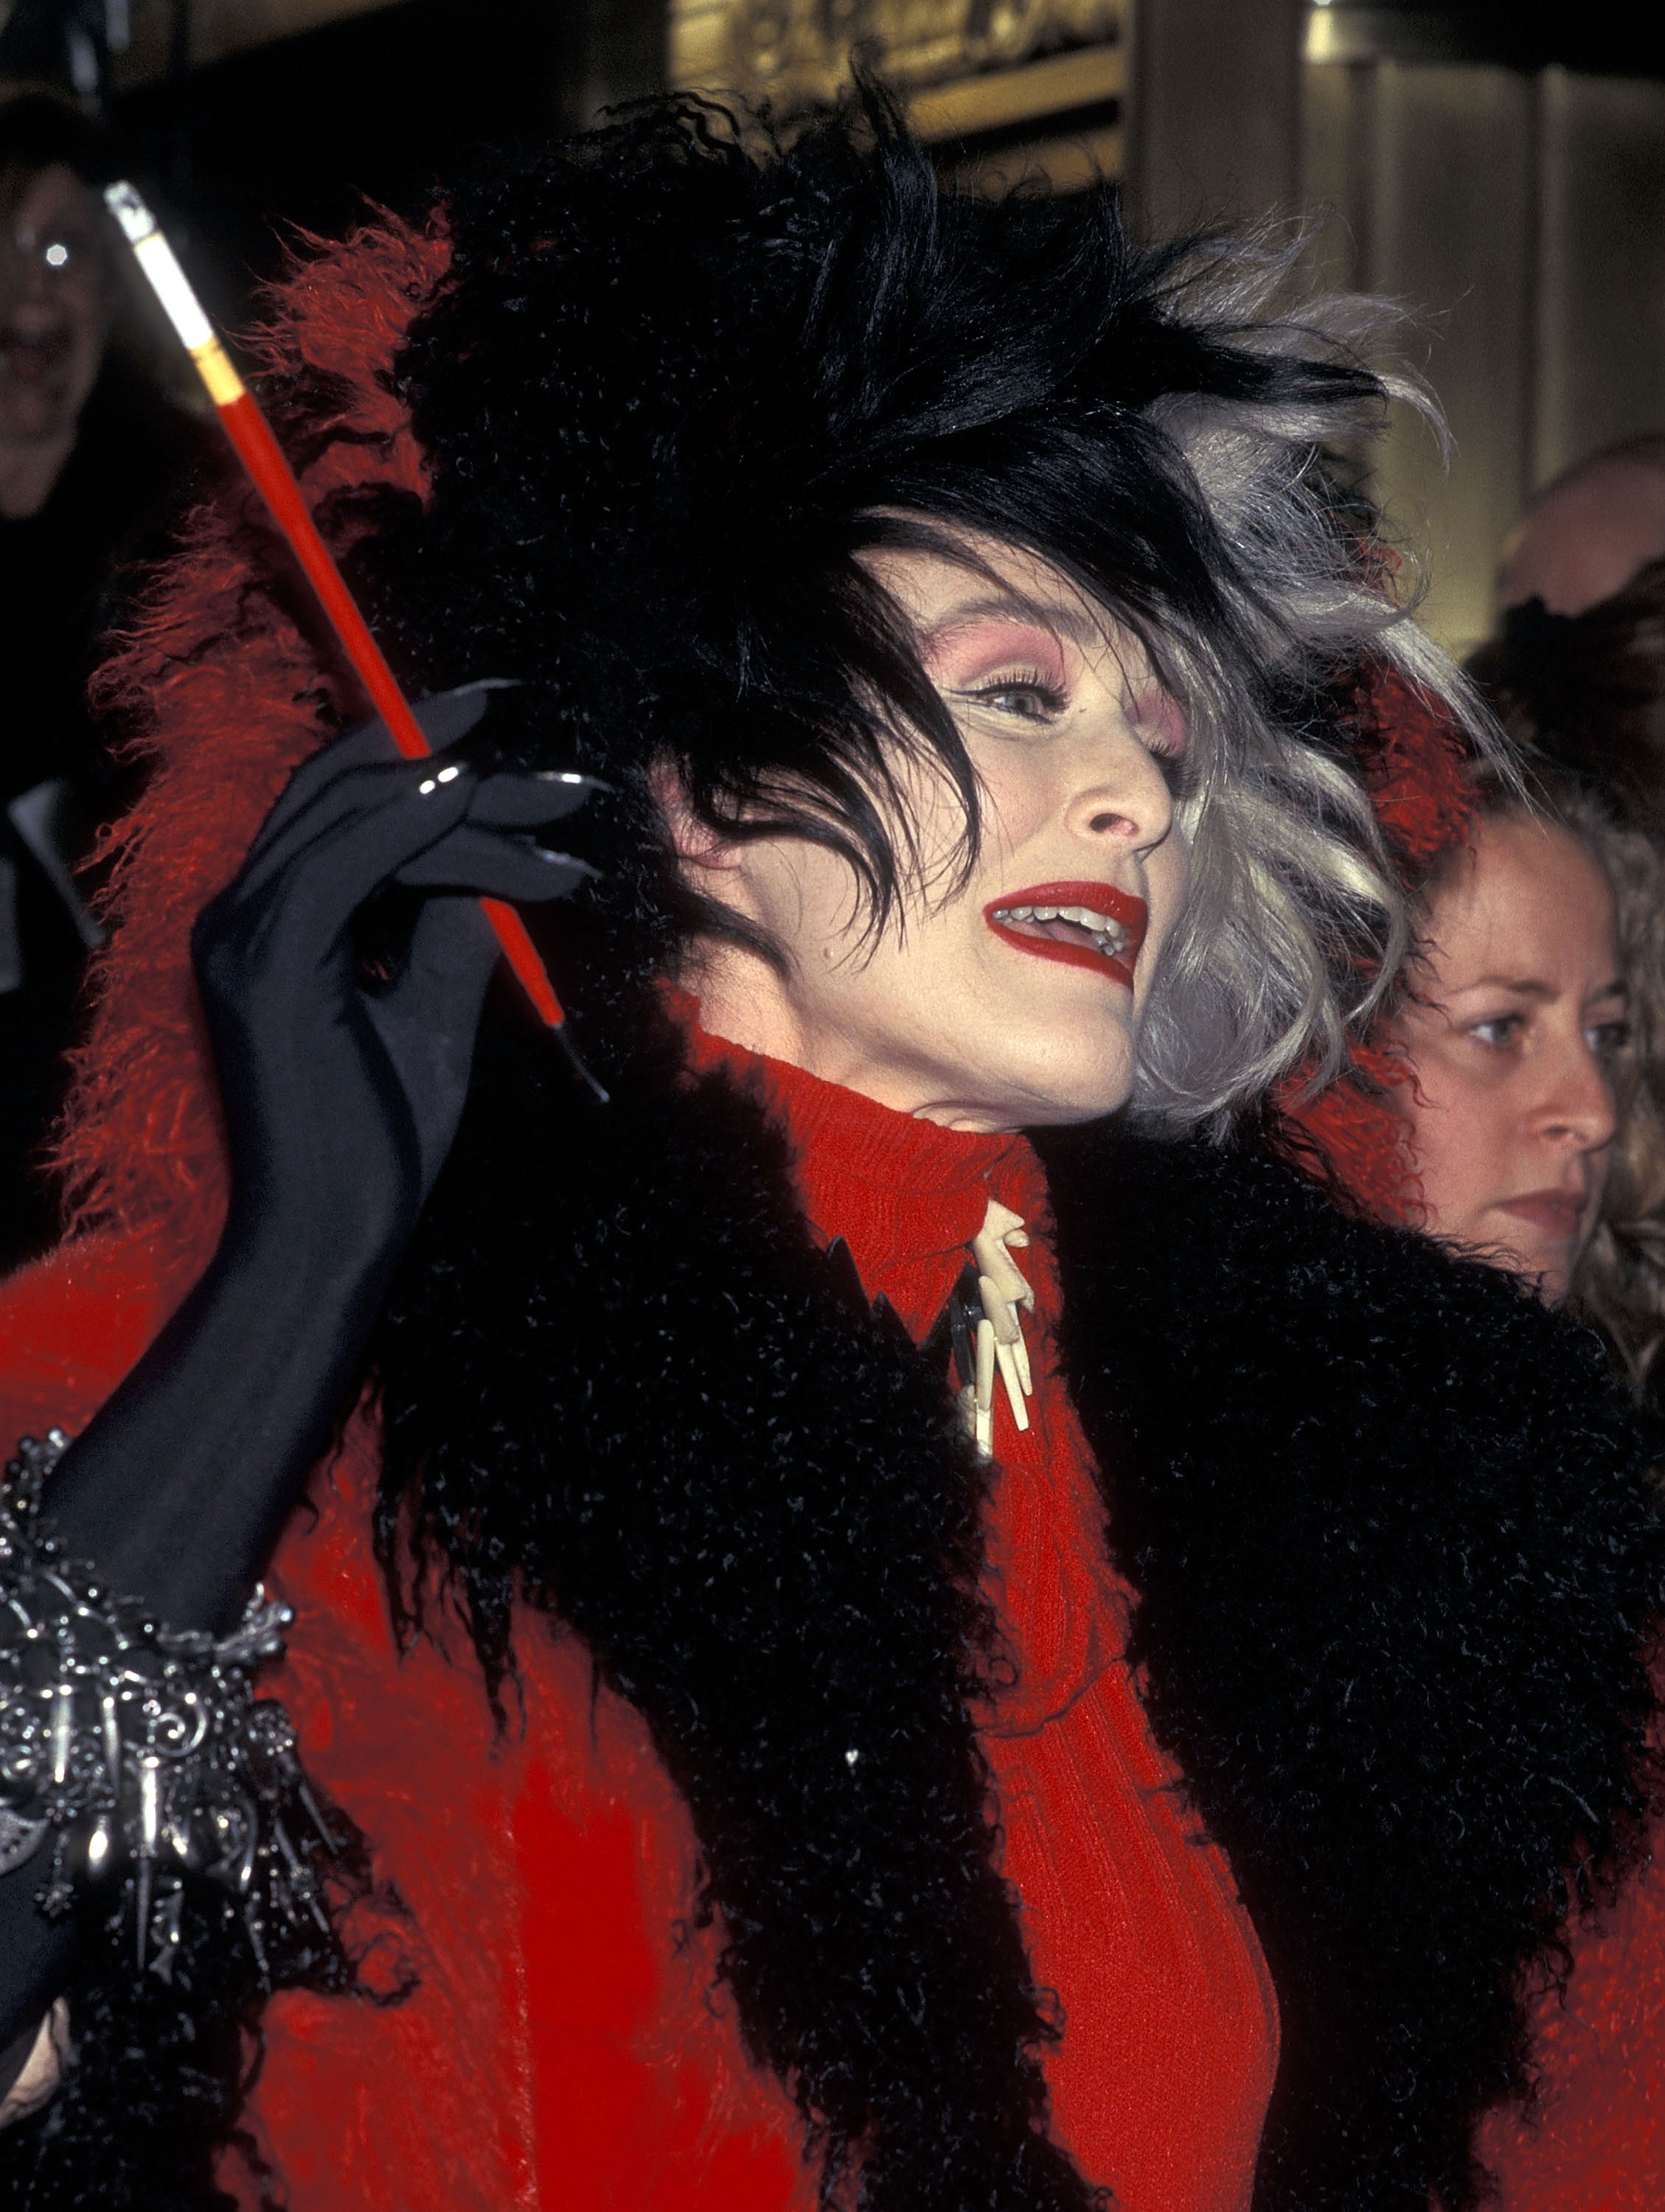 Cruella: Behind Emma Stone's fashion in Disney's 101 Dalmatians prequel